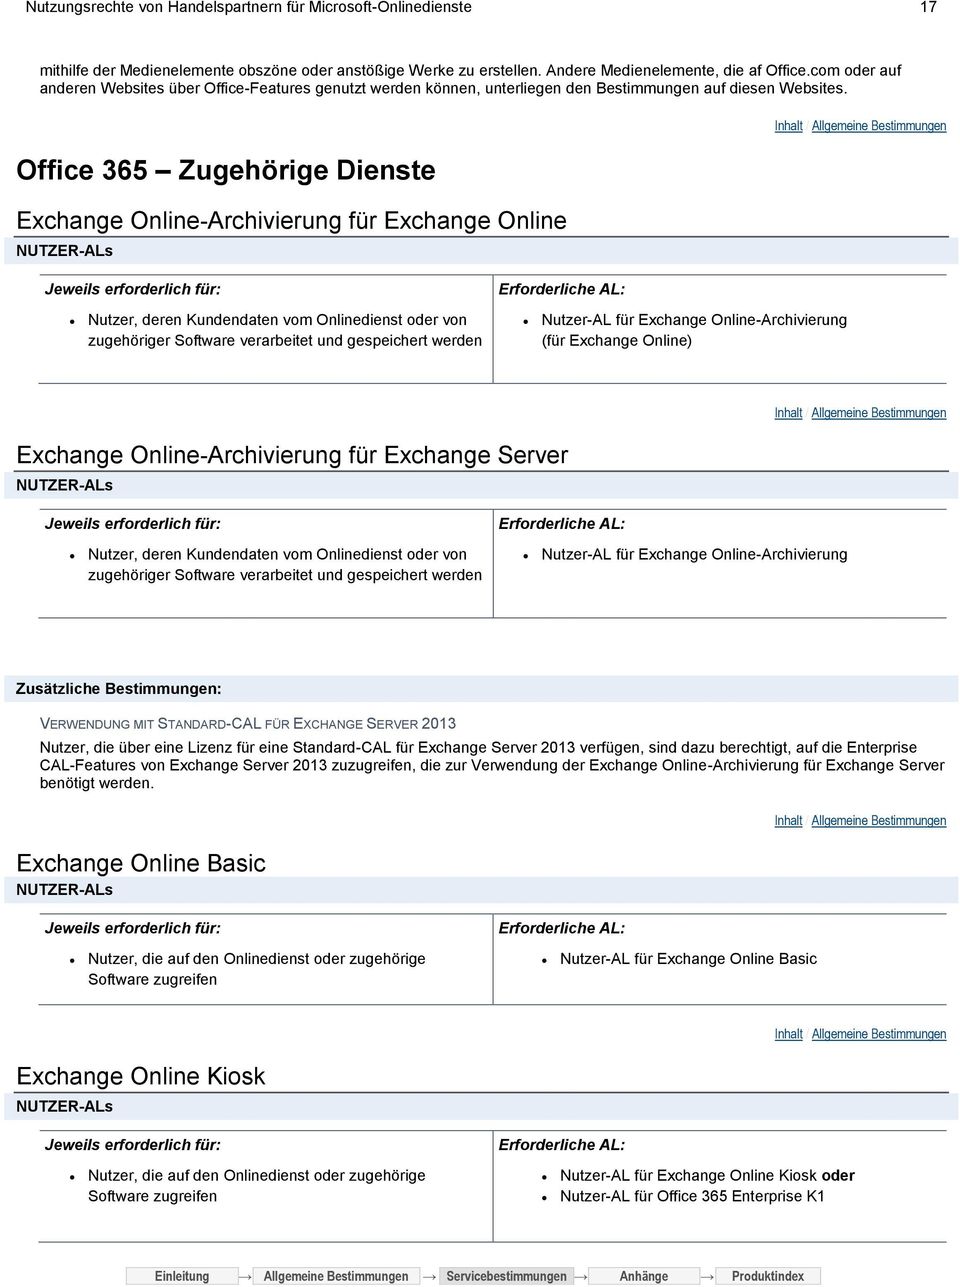 Office 365 Zugehörige Dienste Exchange Online-Archivierung für Exchange Online Nutzer, deren Kundendaten vom Onlinedienst oder von zugehöriger Software verarbeitet und gespeichert werden Nutzer-AL